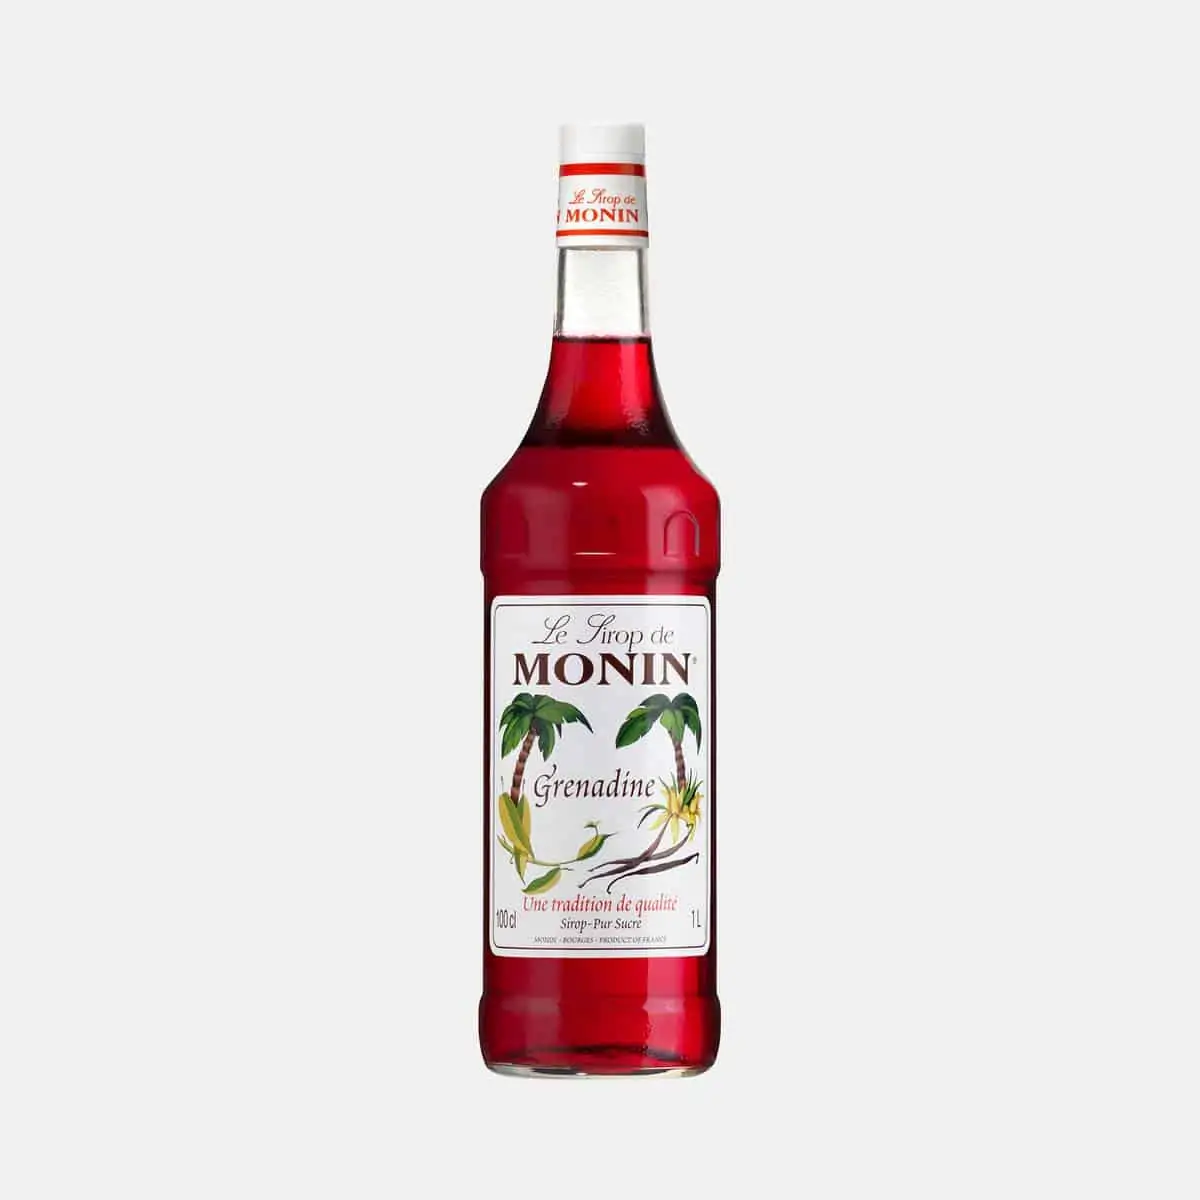 Monin Grenadine Syrup 1 Liter Glass Bottle